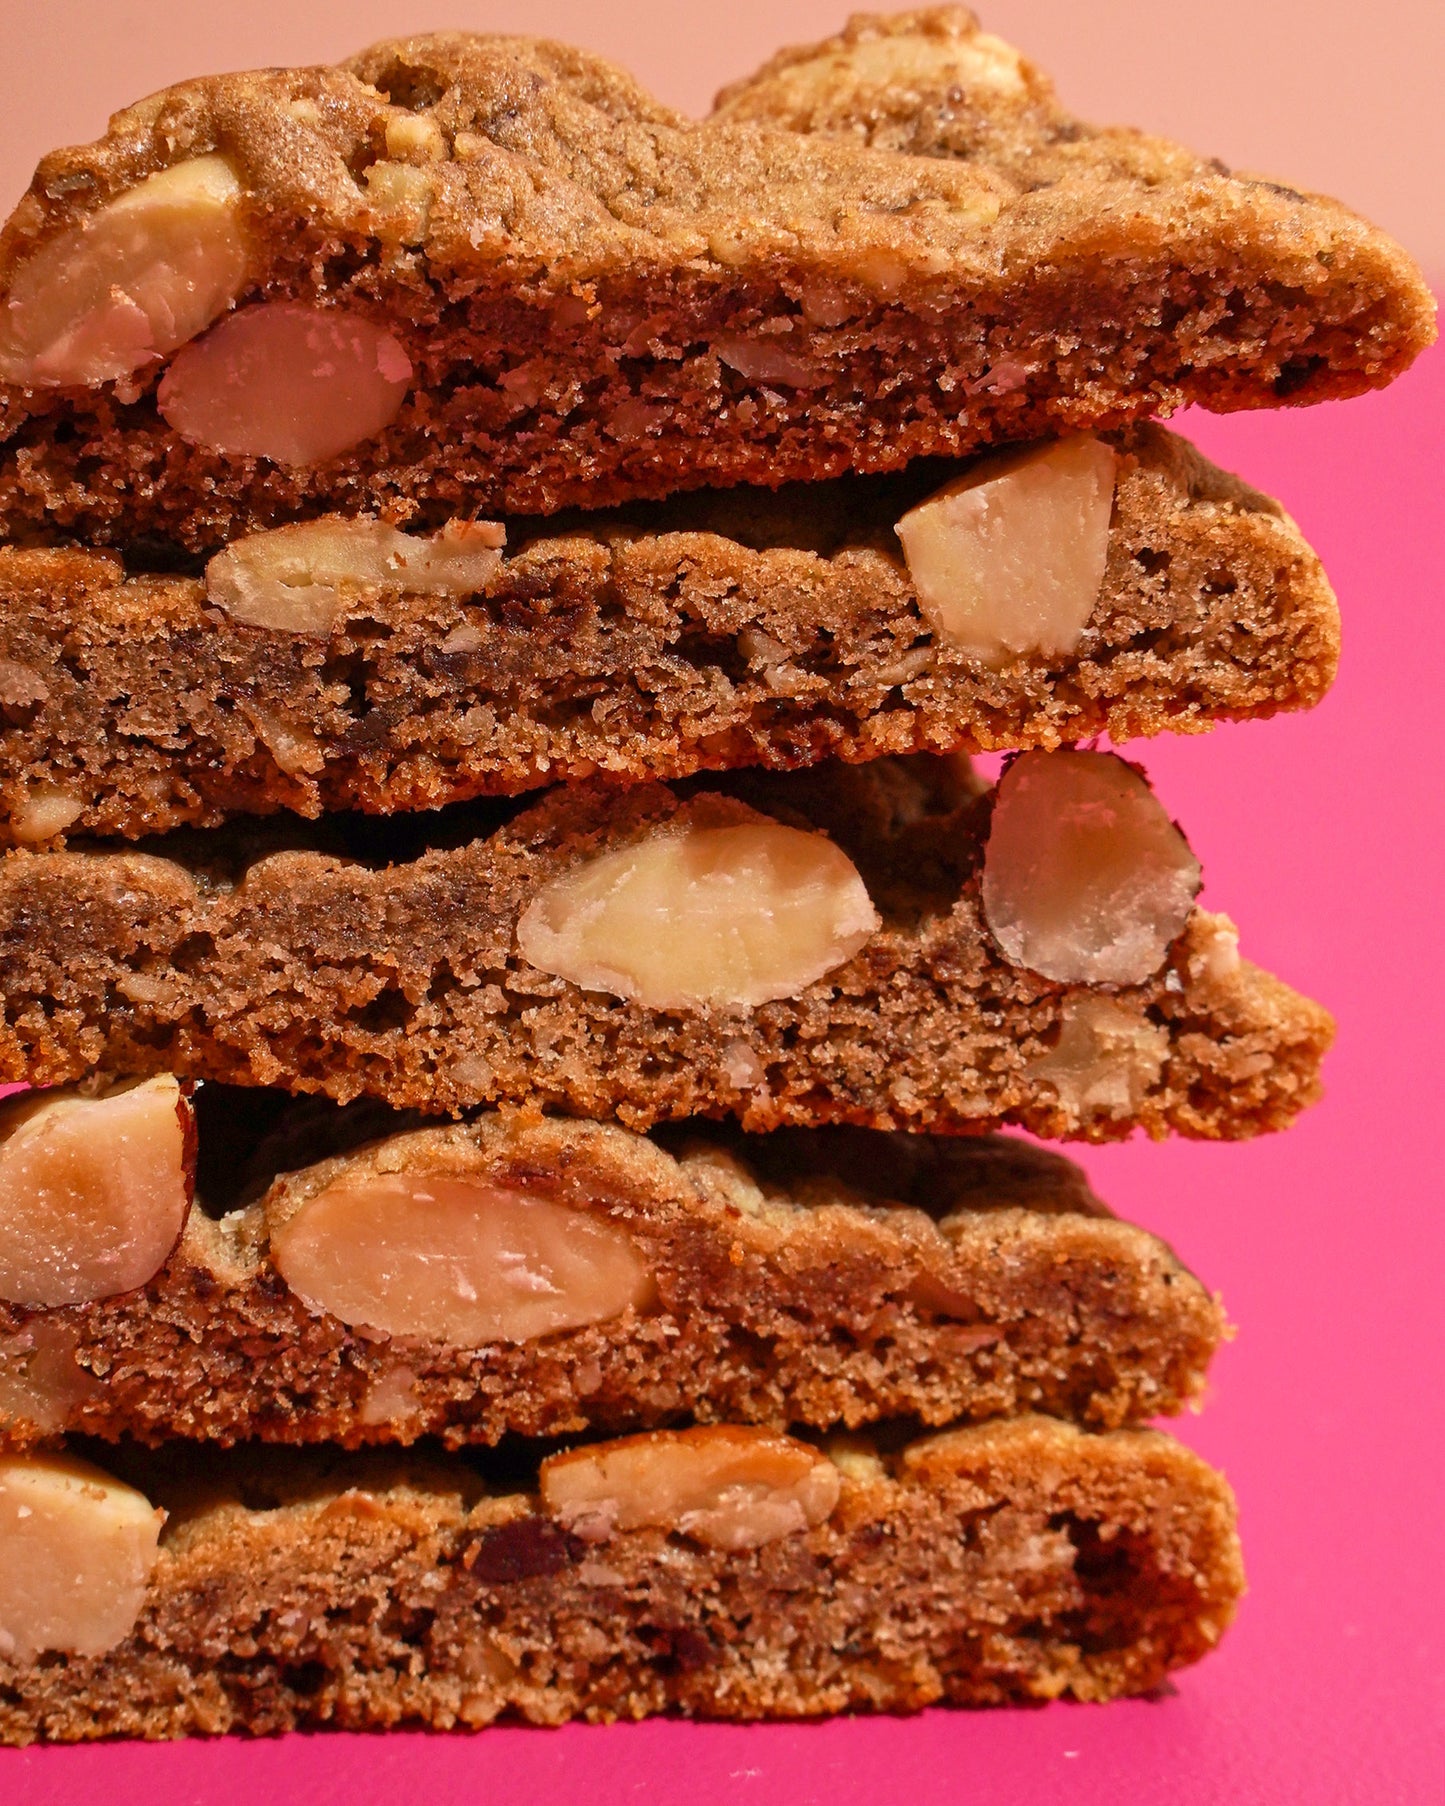 Nutcracker Sweet - Almonds, Pecans, Hazelnuts and Walnuts with Dark Chocolate Chunks